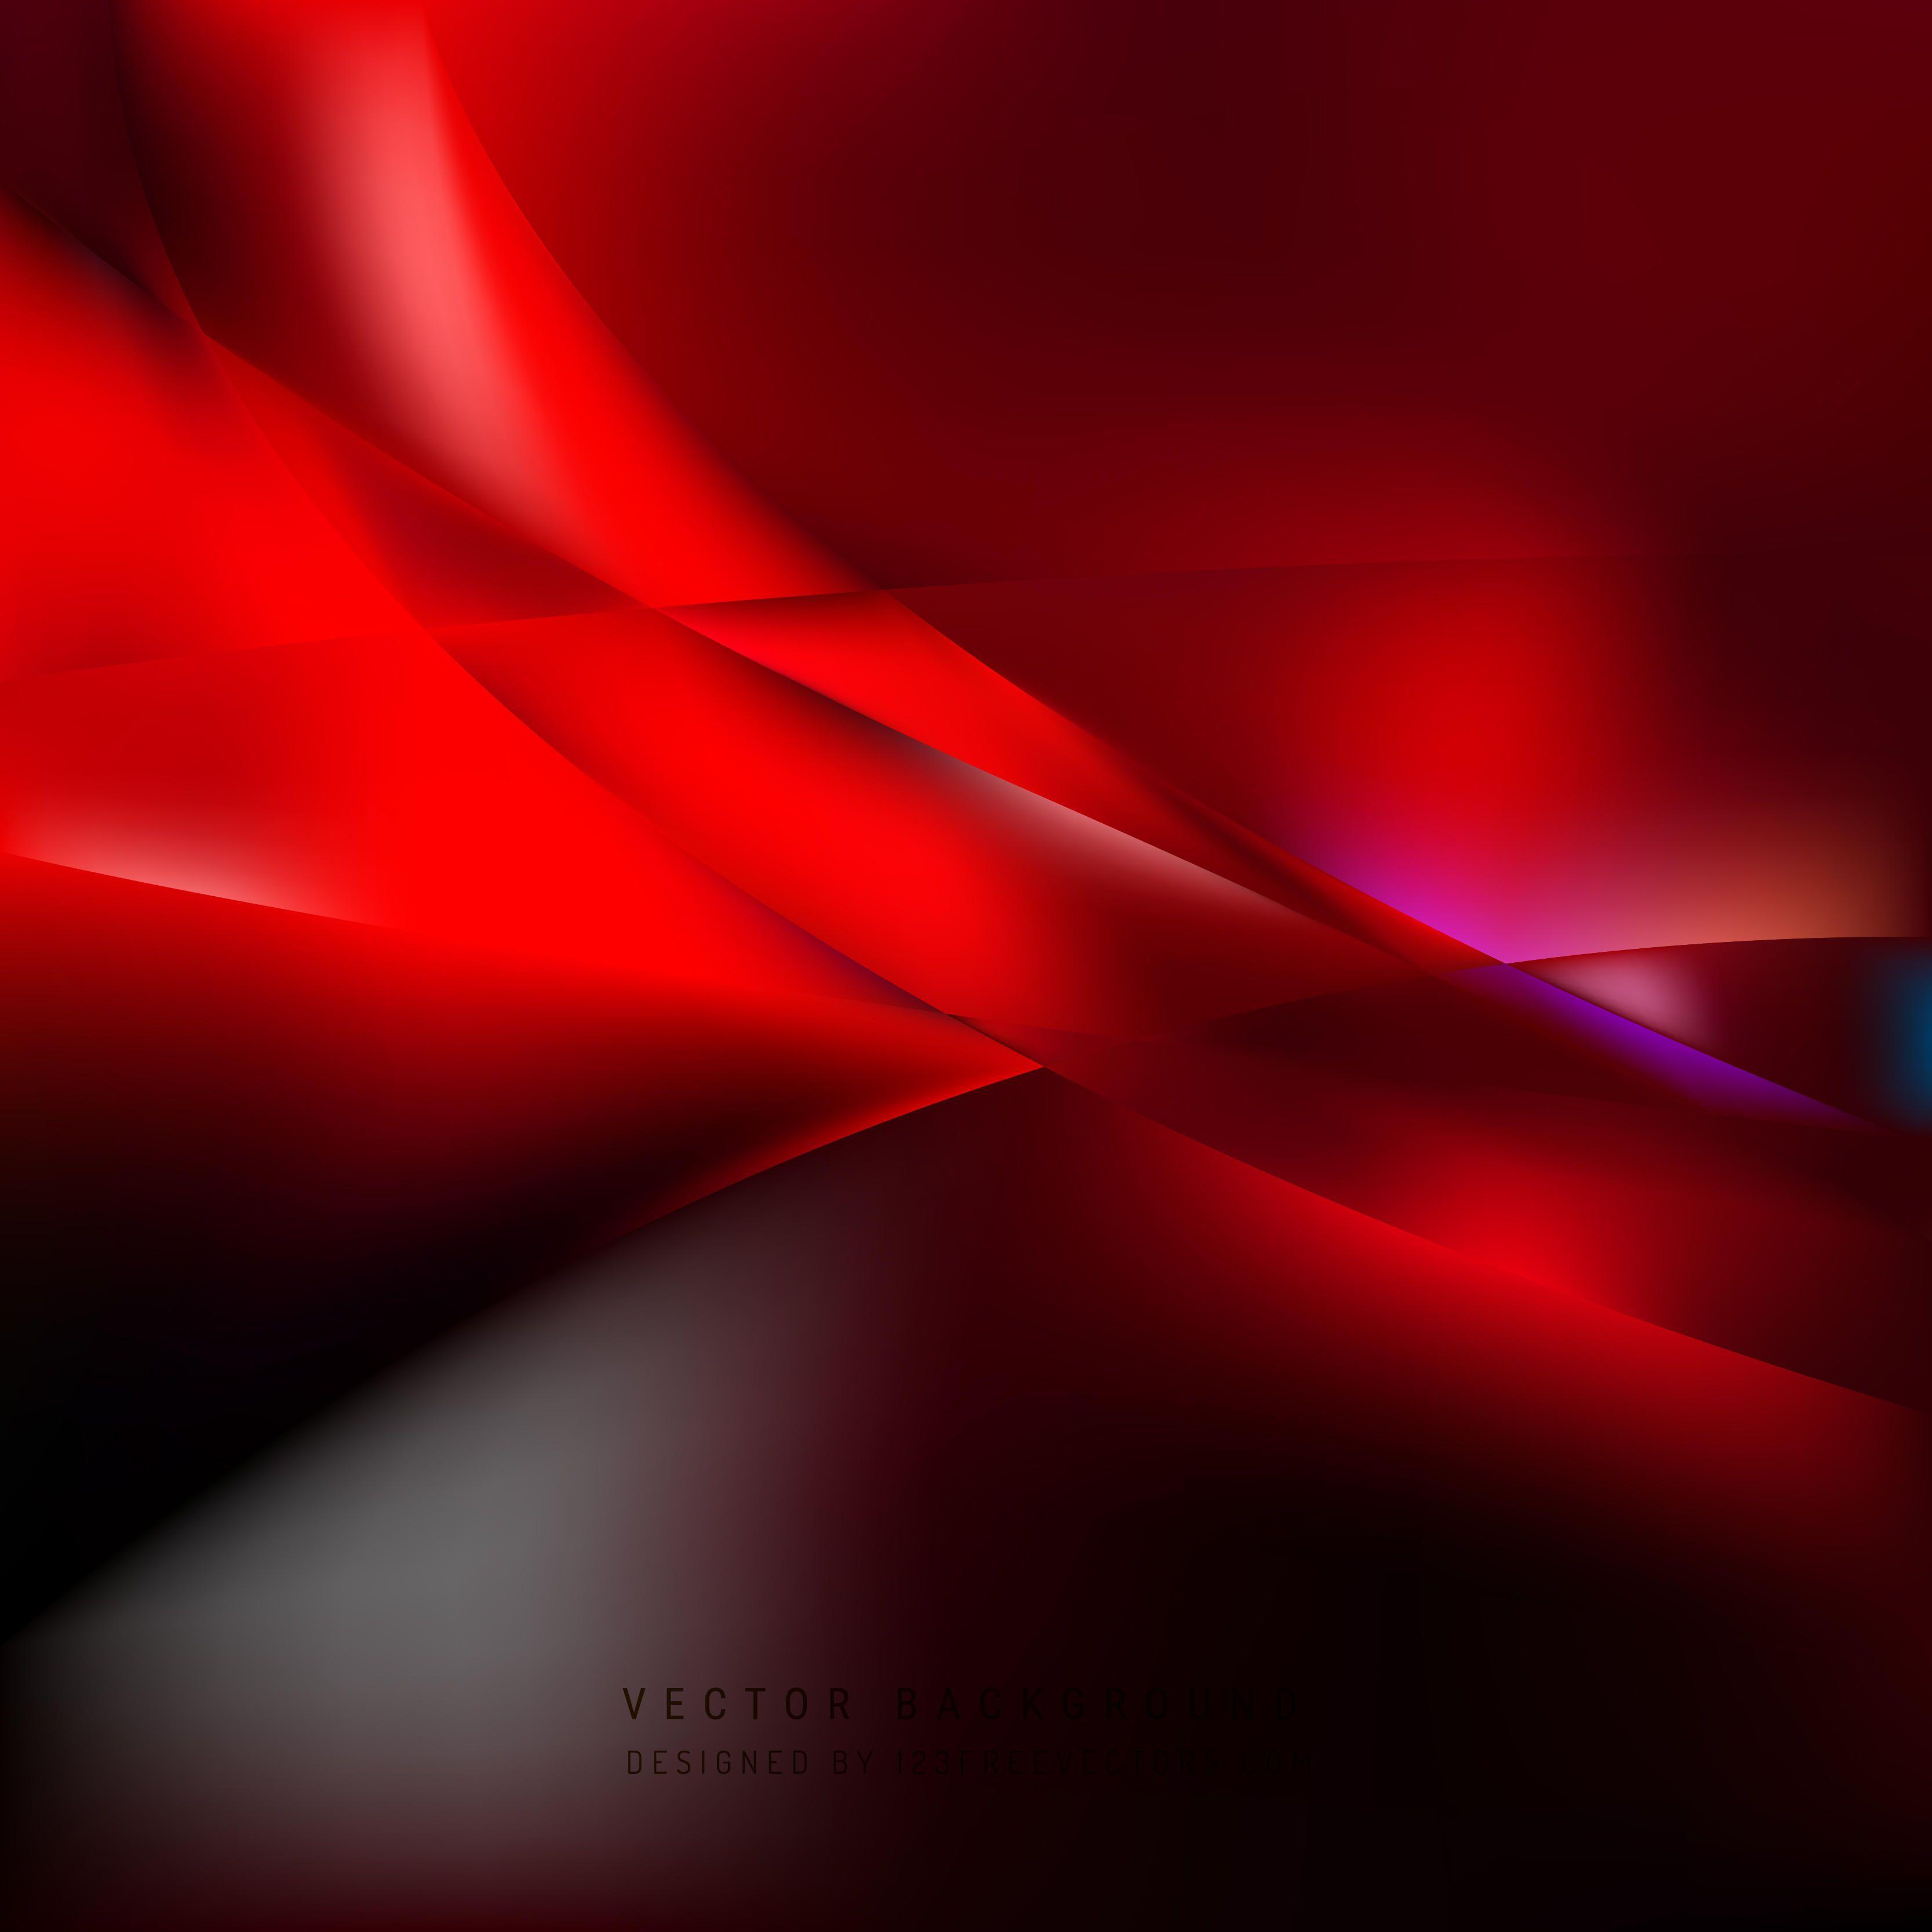 Dark Red Background Vectors. Download Free Vector Art